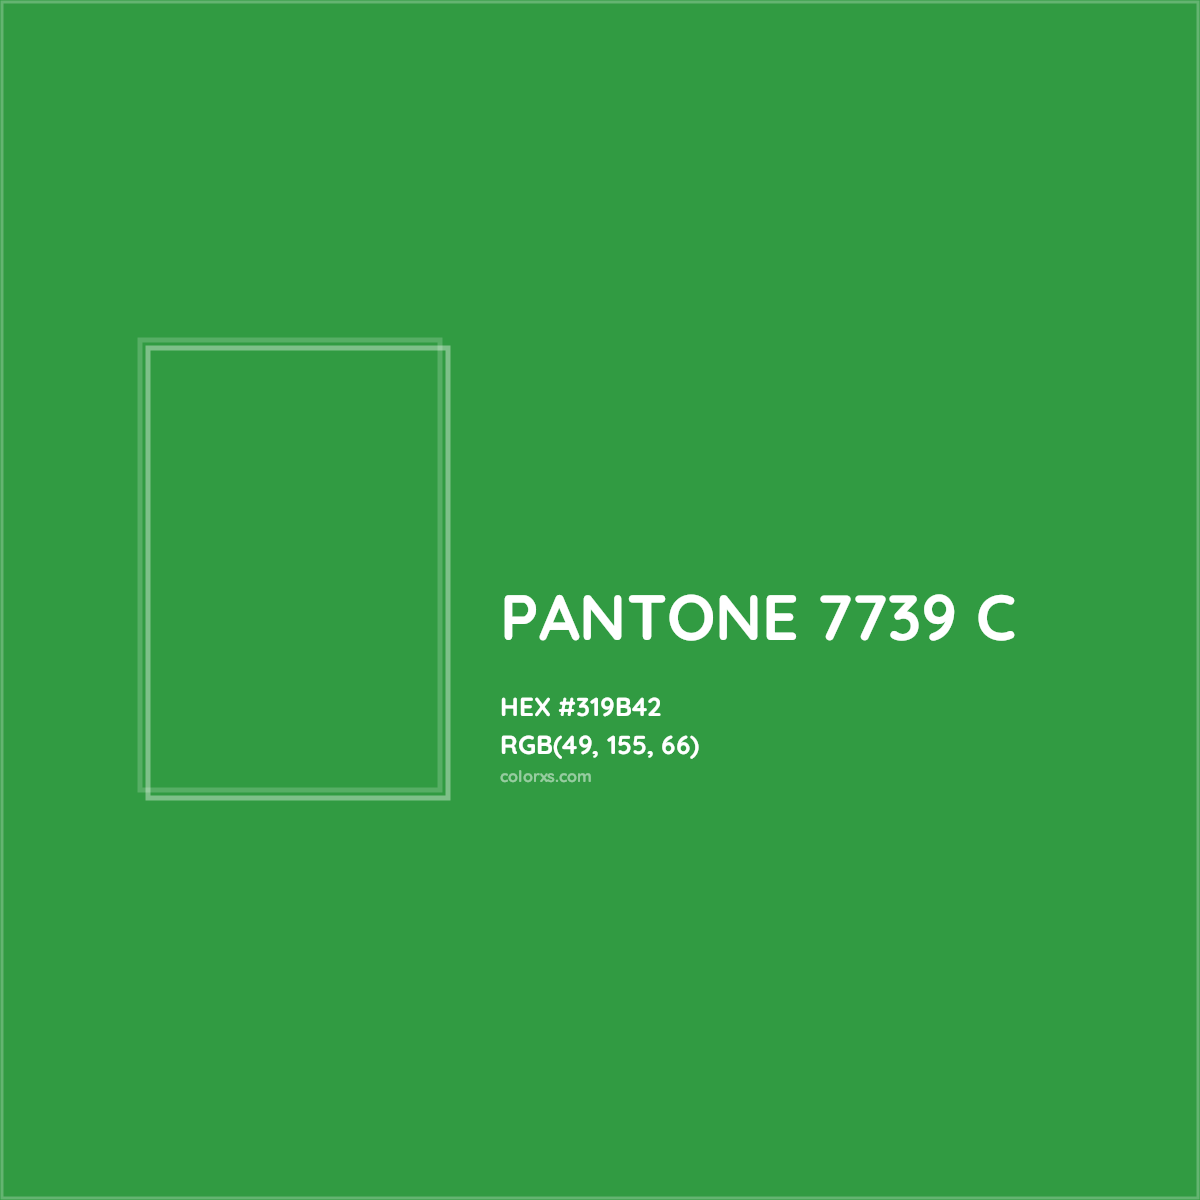 HEX #319B42 PANTONE 7739 C CMS Pantone PMS - Color Code